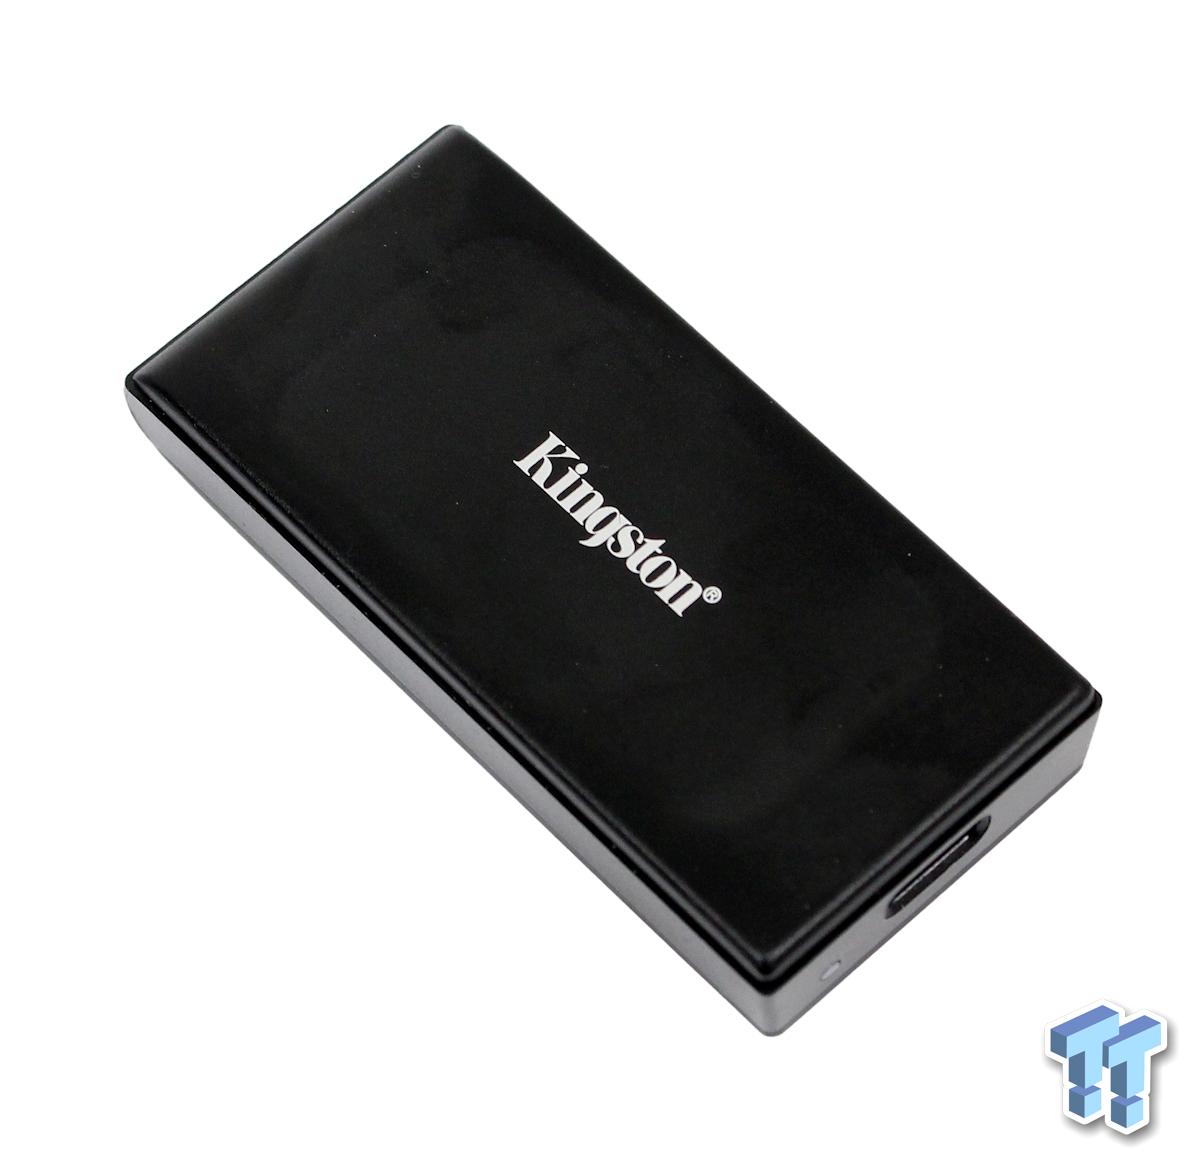 Kingston XS1000 Portable USB 3.2 Gen 2 SSD (1TB)